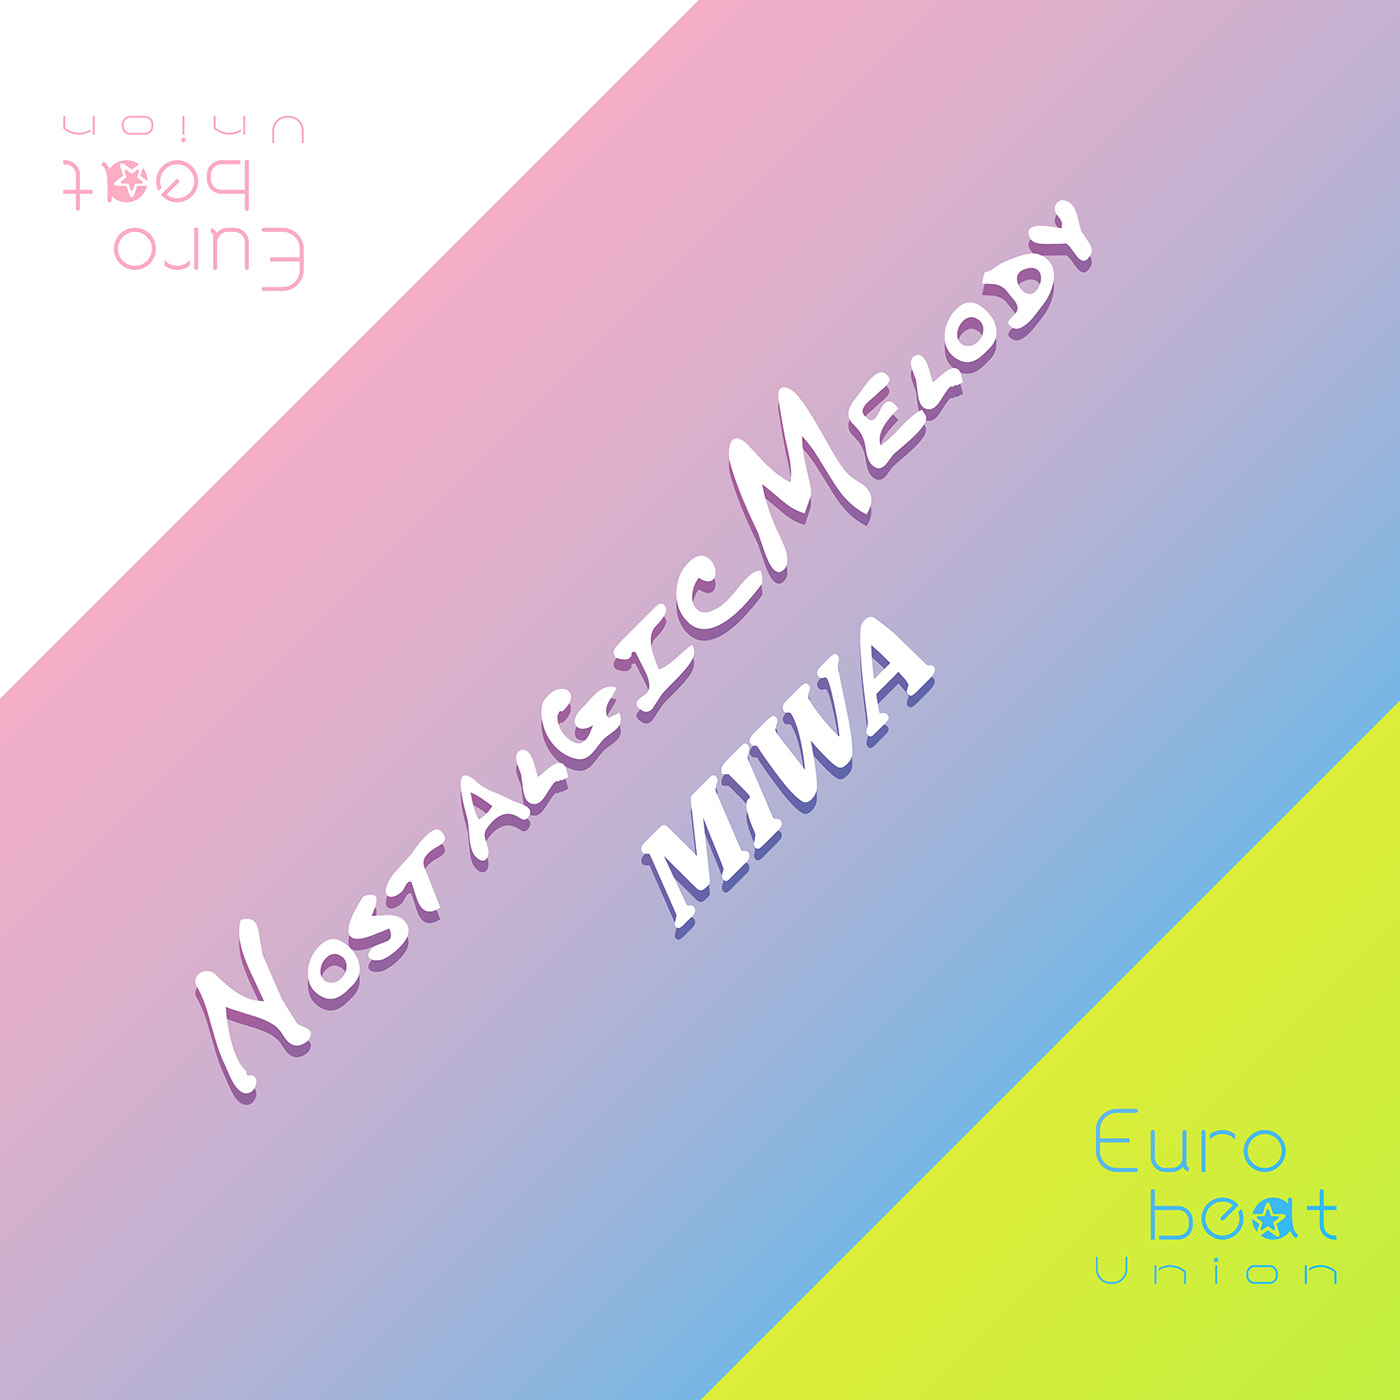 Nostalgic Melody Miwa Eurobeat Union